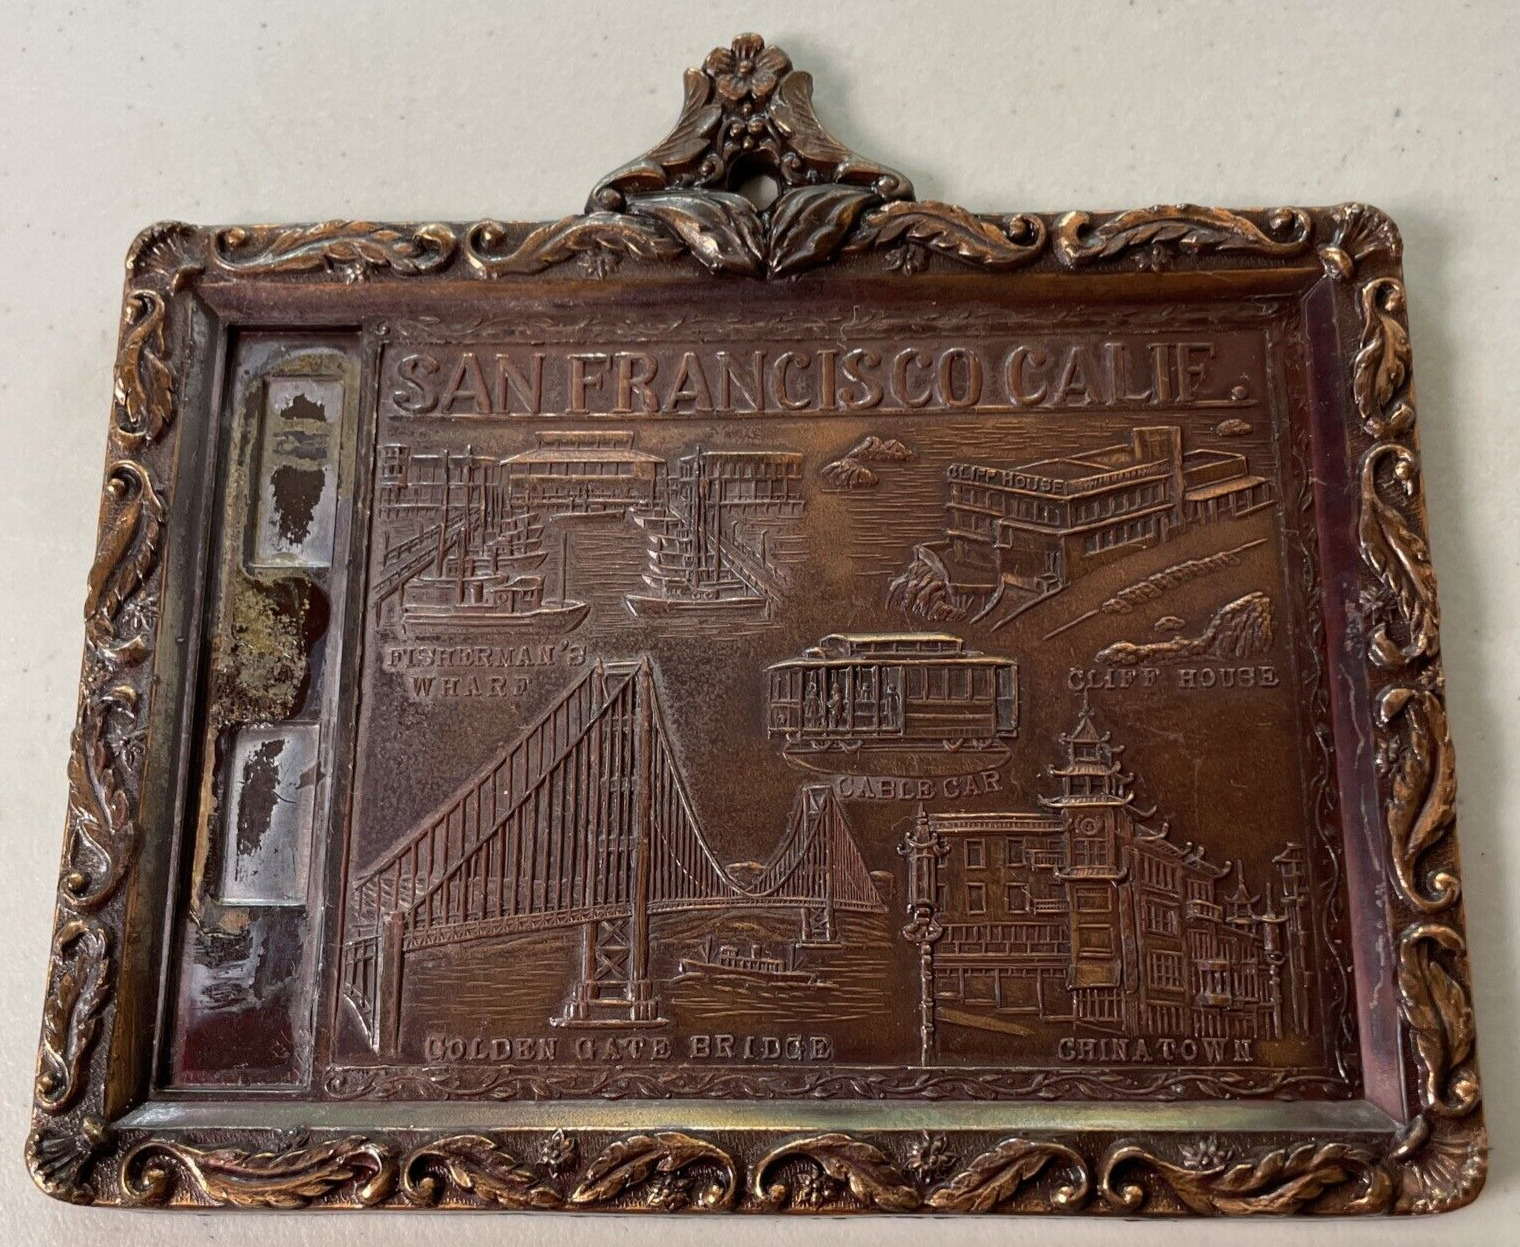 SAN FRANCISCO CALIF Vintage Metal Wall Plaque Golden Gate Bridge, Cable Car, Etc